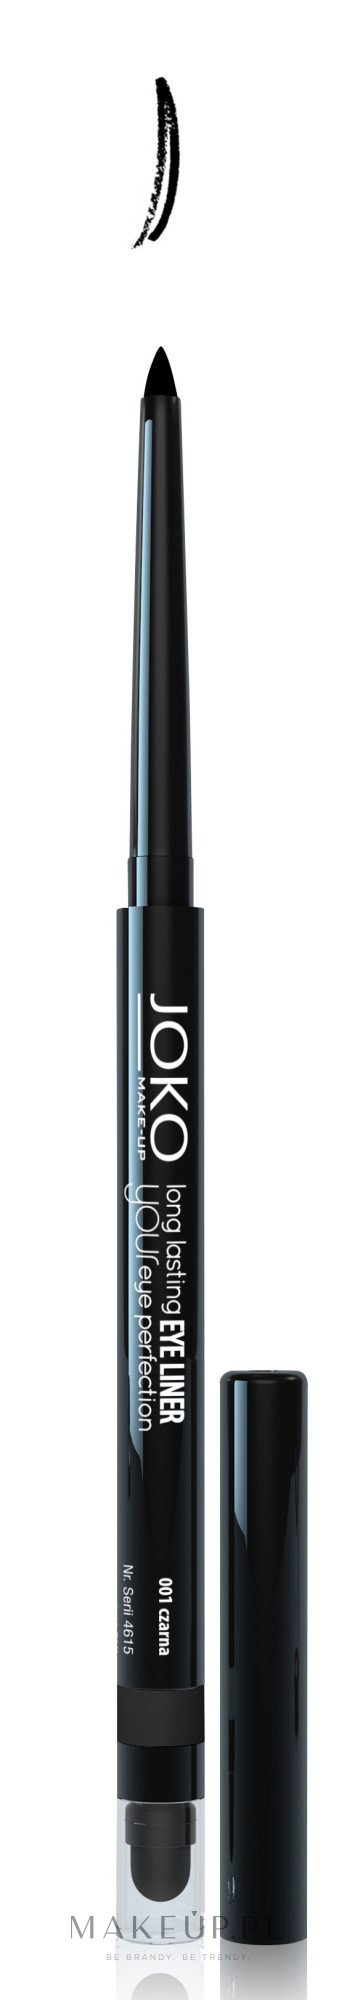 Automatyczny trwały eyeliner - Joko Long Lasting Eye Liner — Zdjęcie 001 - Black